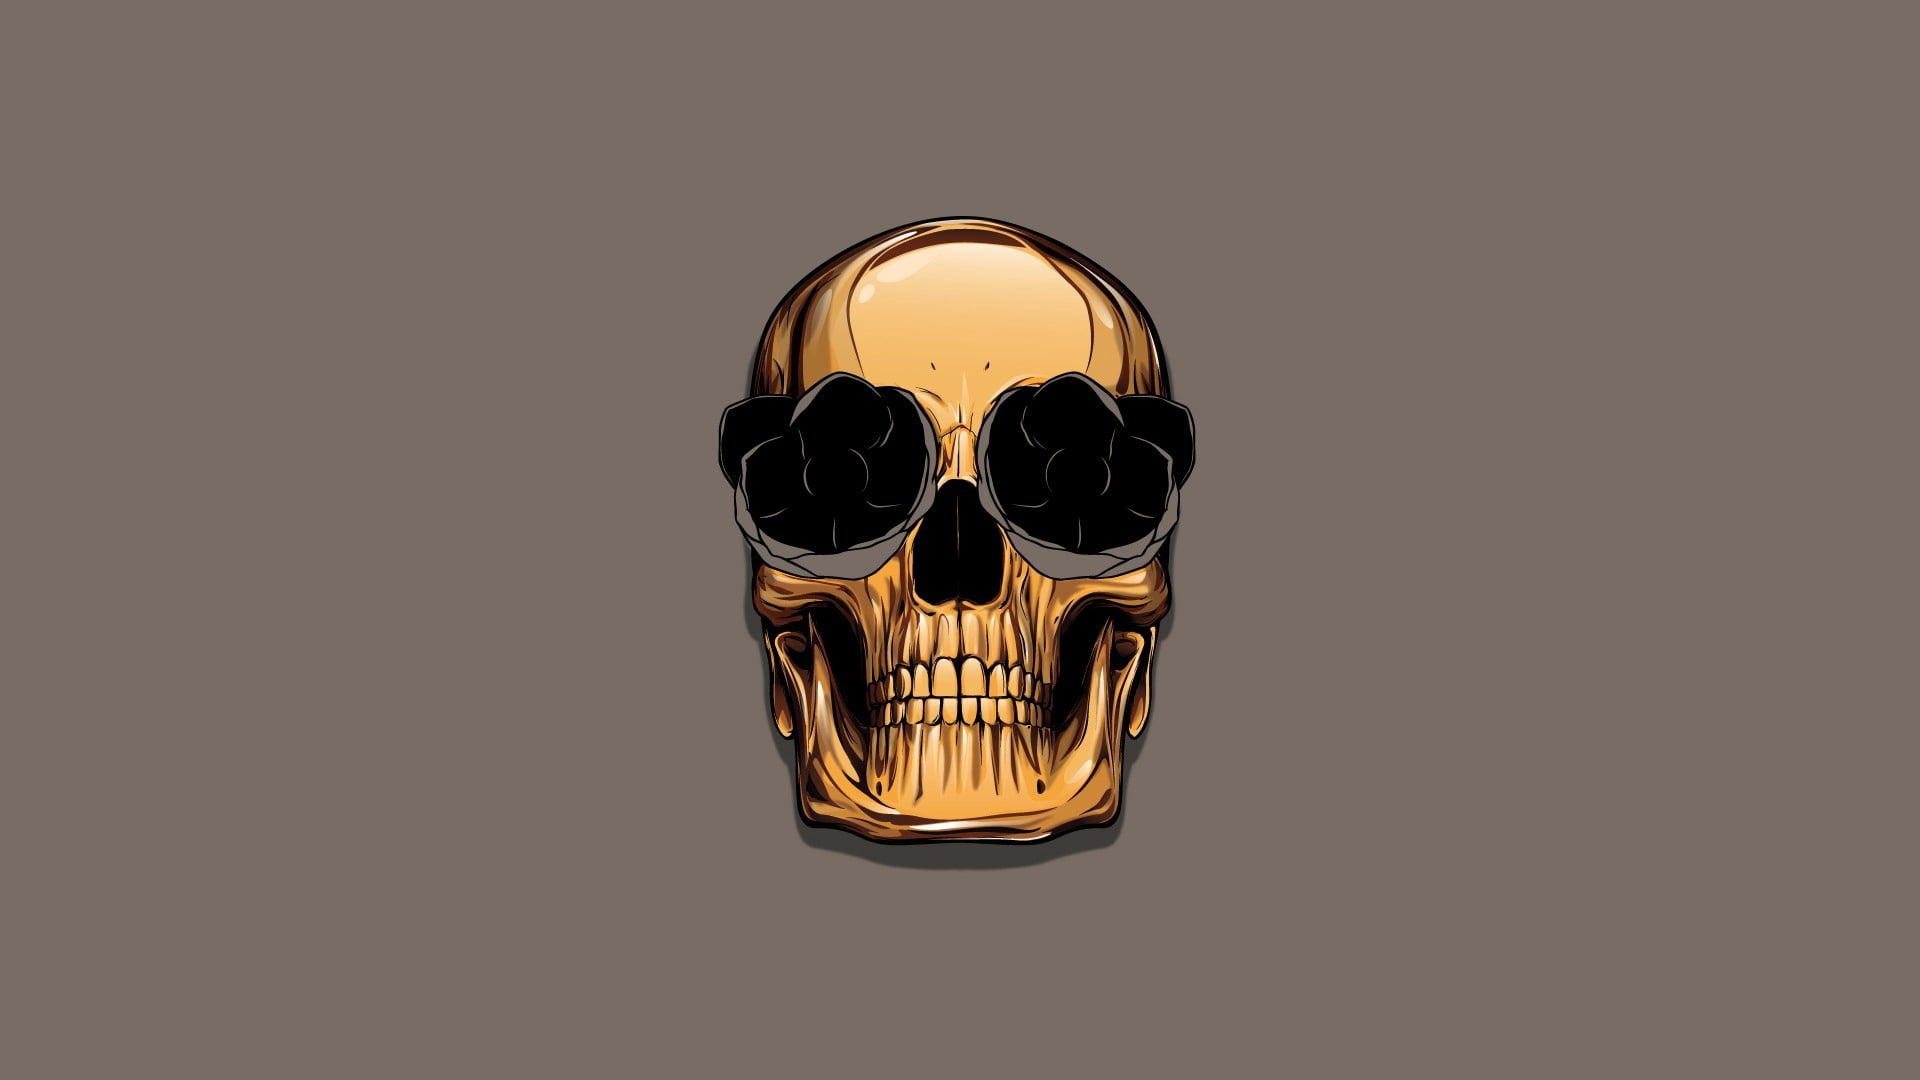 gold skull illustration, art, minimalism, human Skull, vector